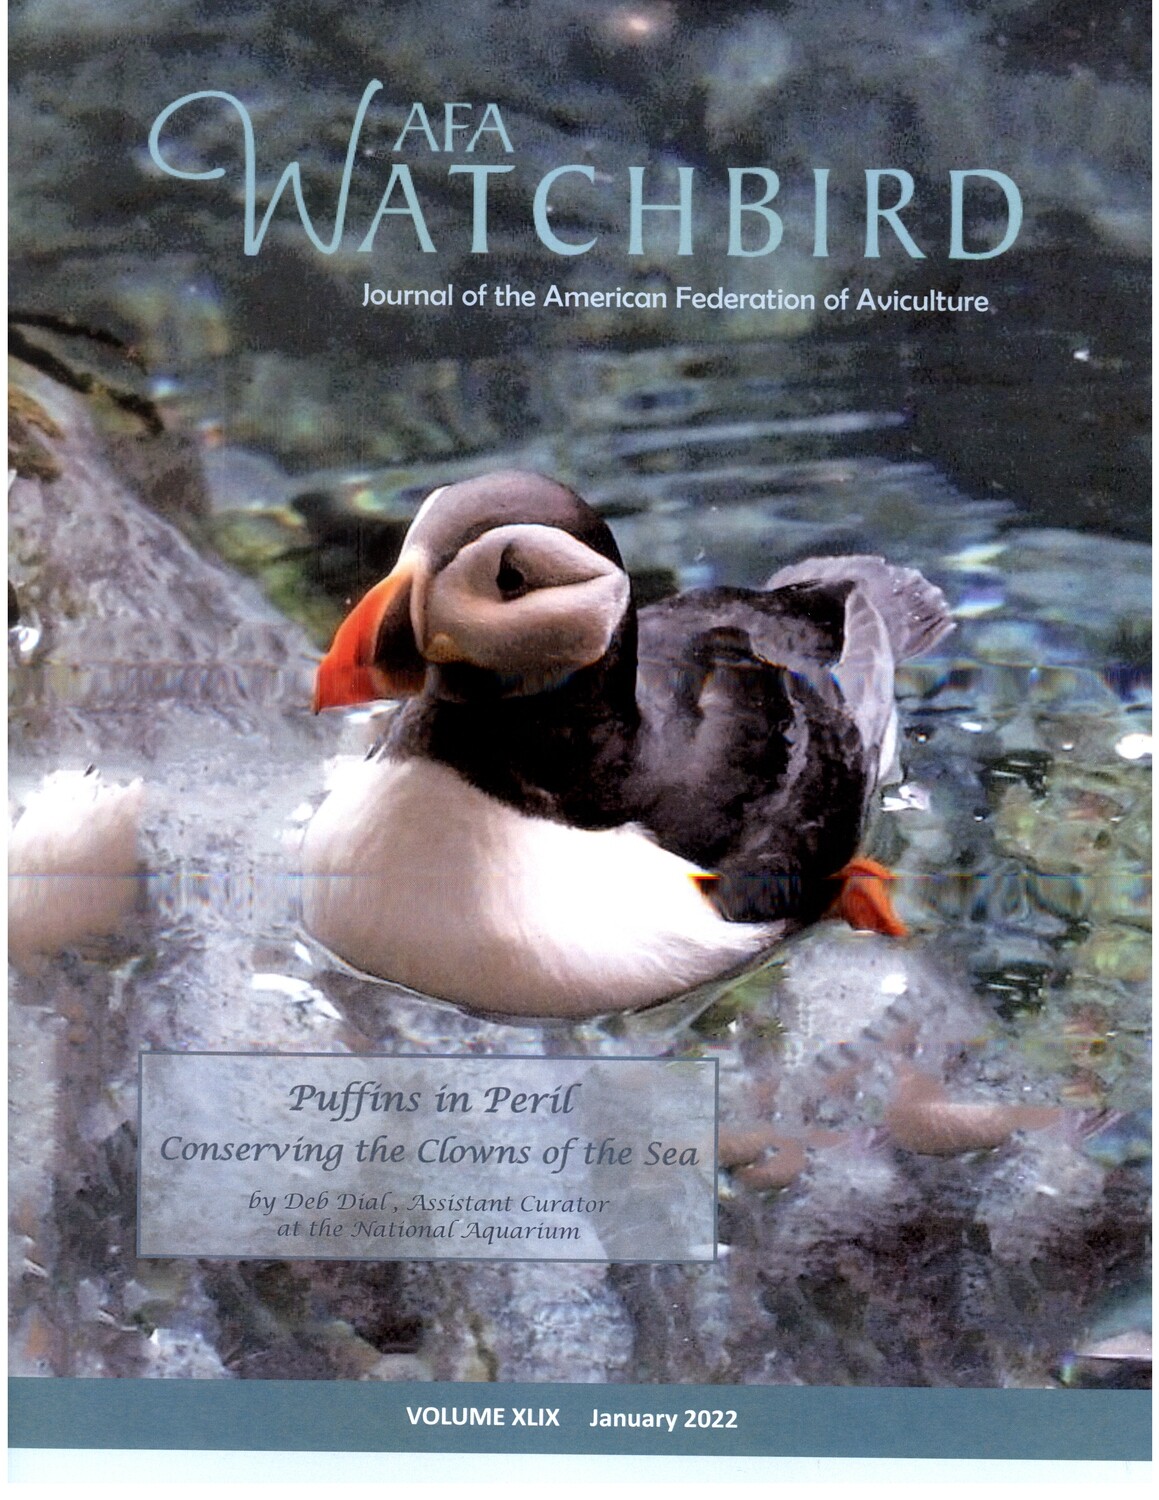 AFA Watchbird Journal  Volume XLIX, January 2022